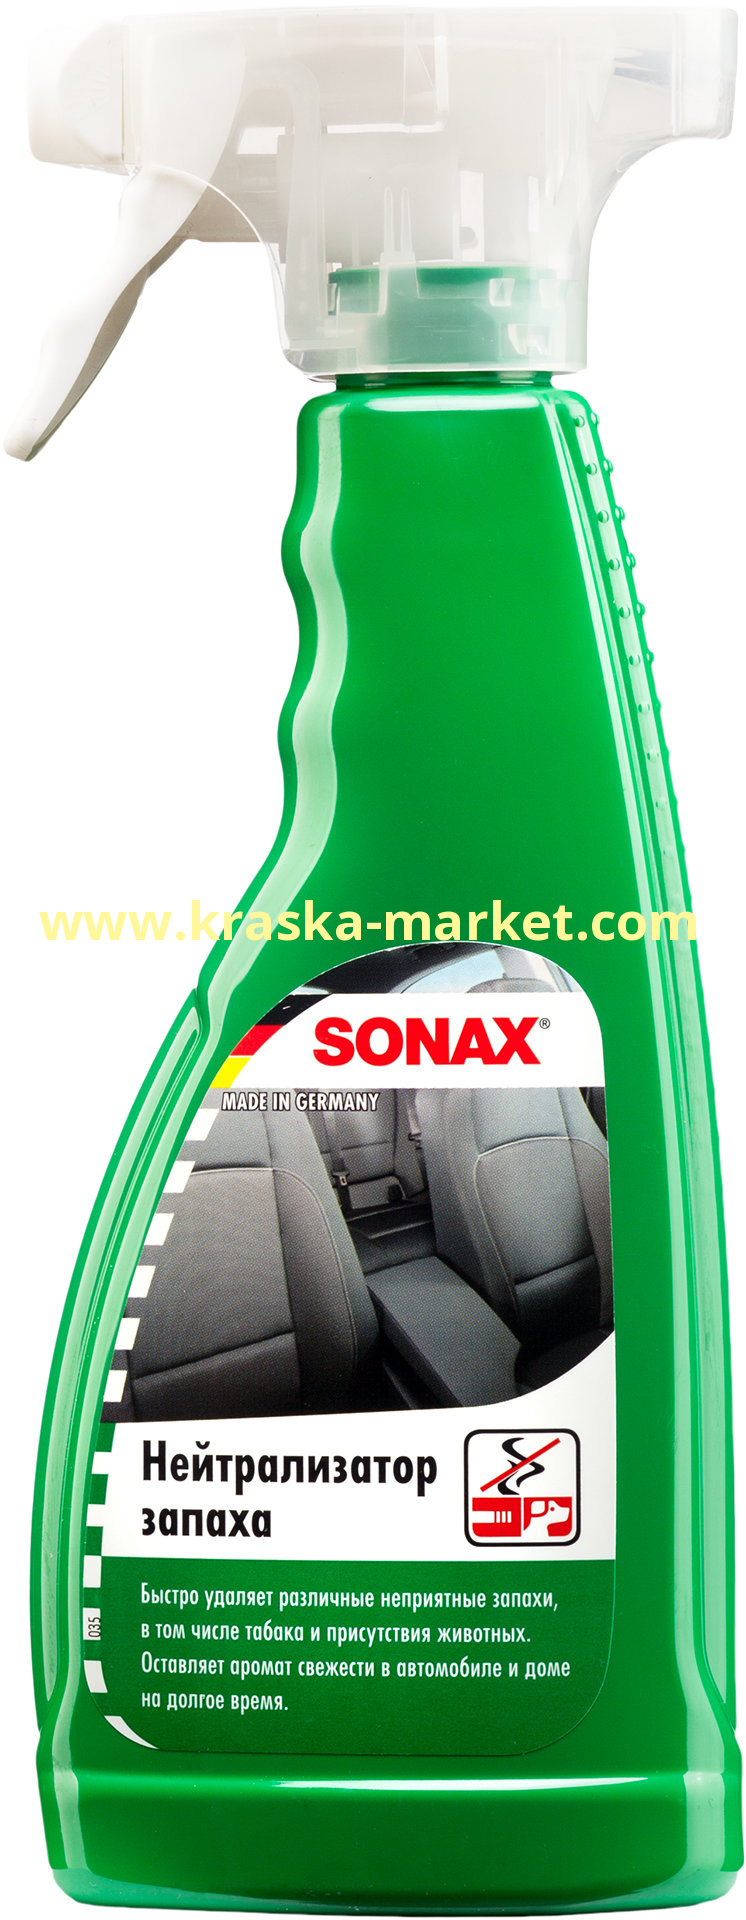 Нейтрализатор запаха. Объем(м3): 500 мл. Артикул: 292241. Производитель: SONAX.